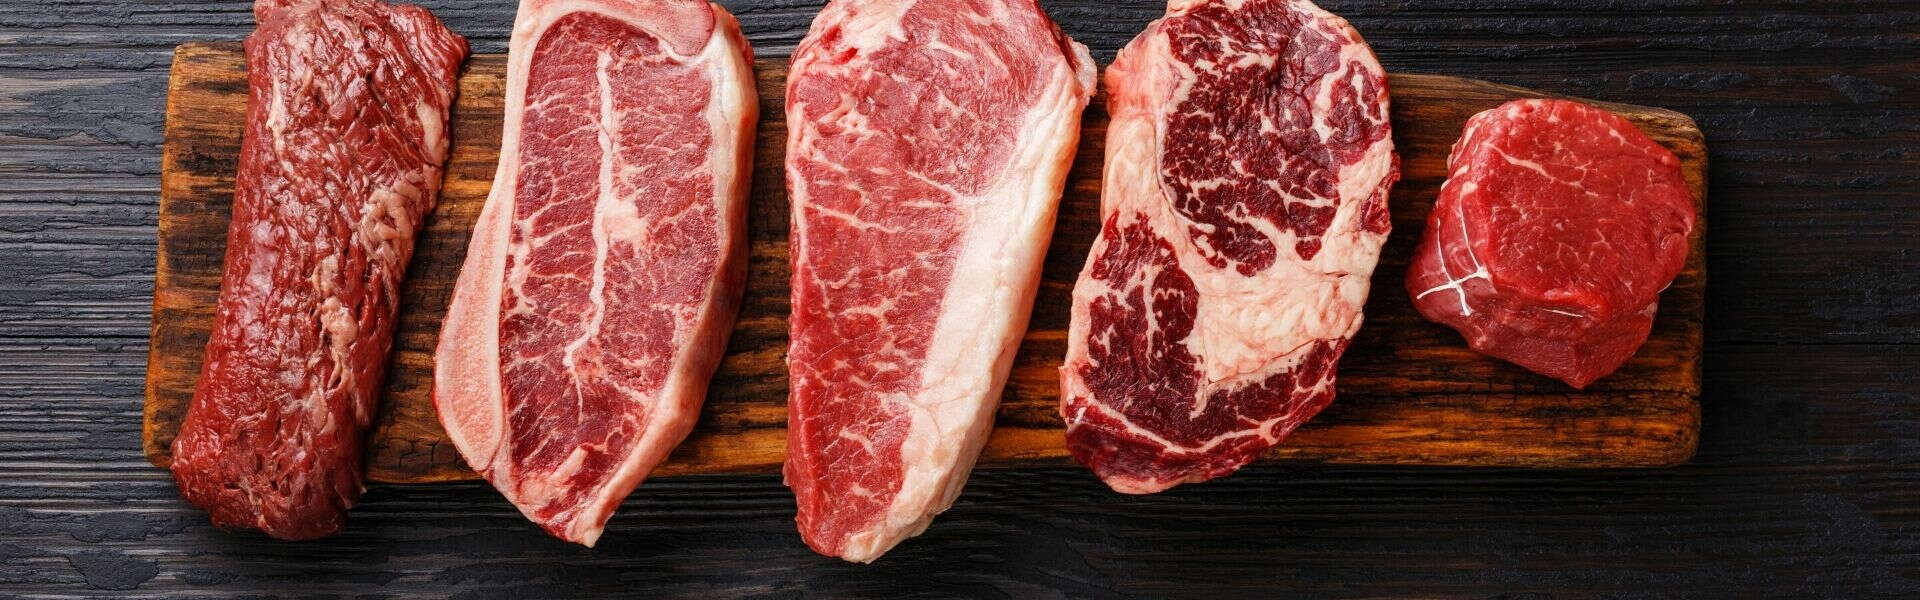 Focus proteine | Proteine della carne di manzo idrolizzate